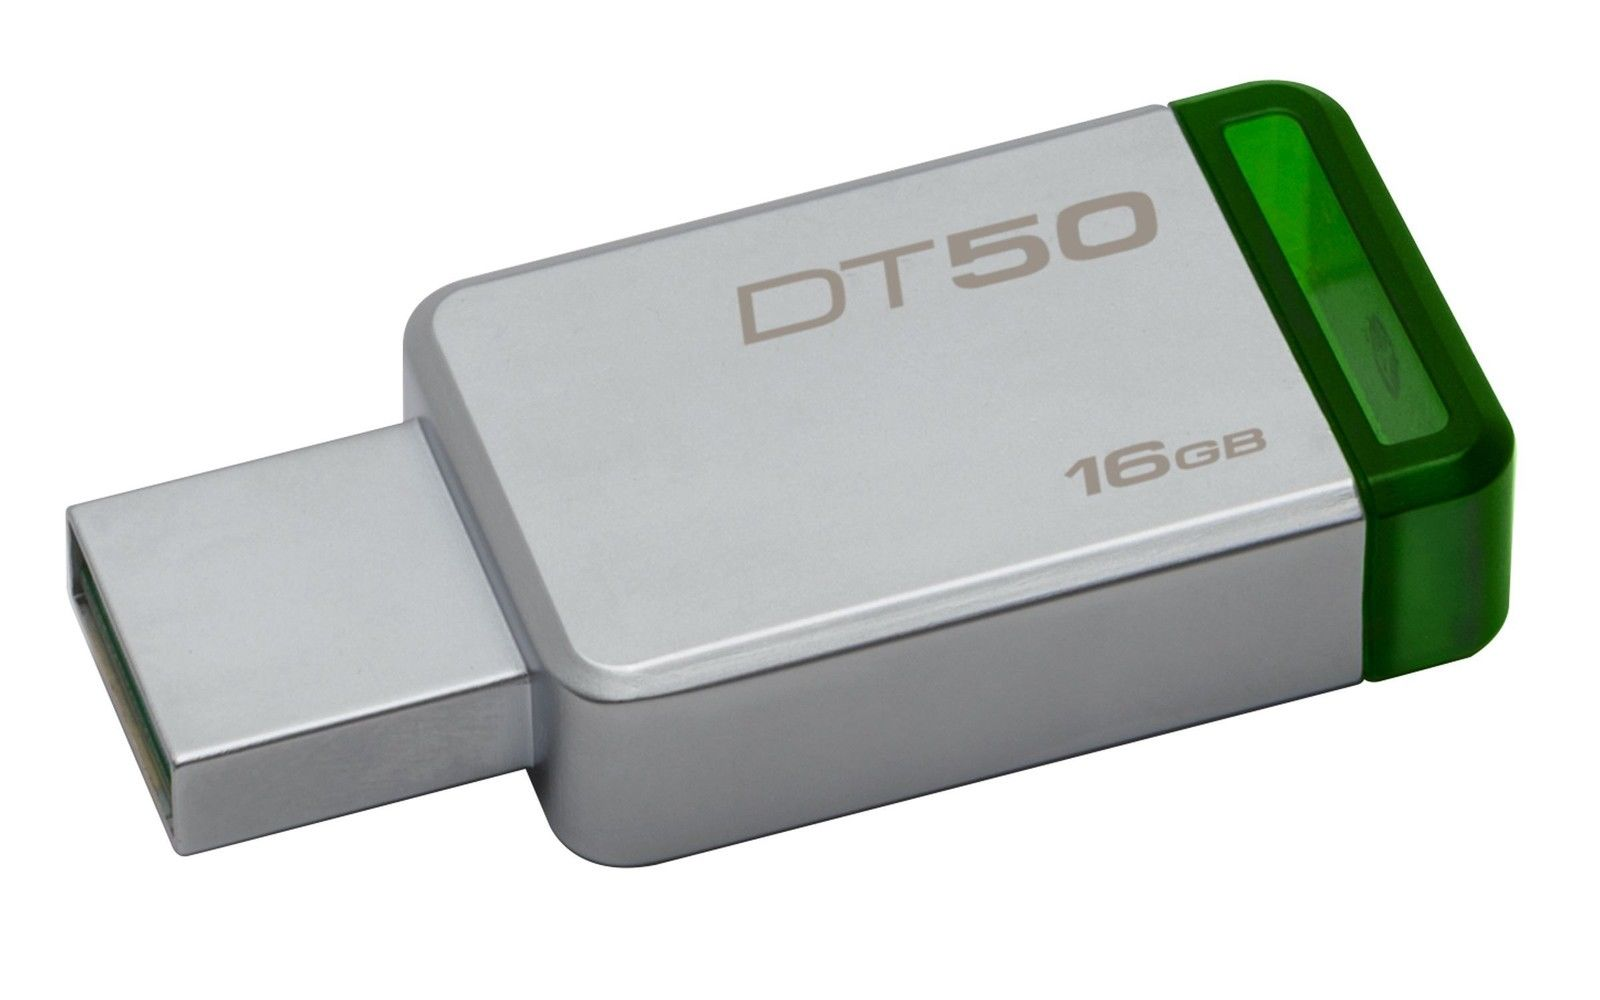 KINGSTON 16GB DataTraveler USB 3.0 flash DT50/16GB 